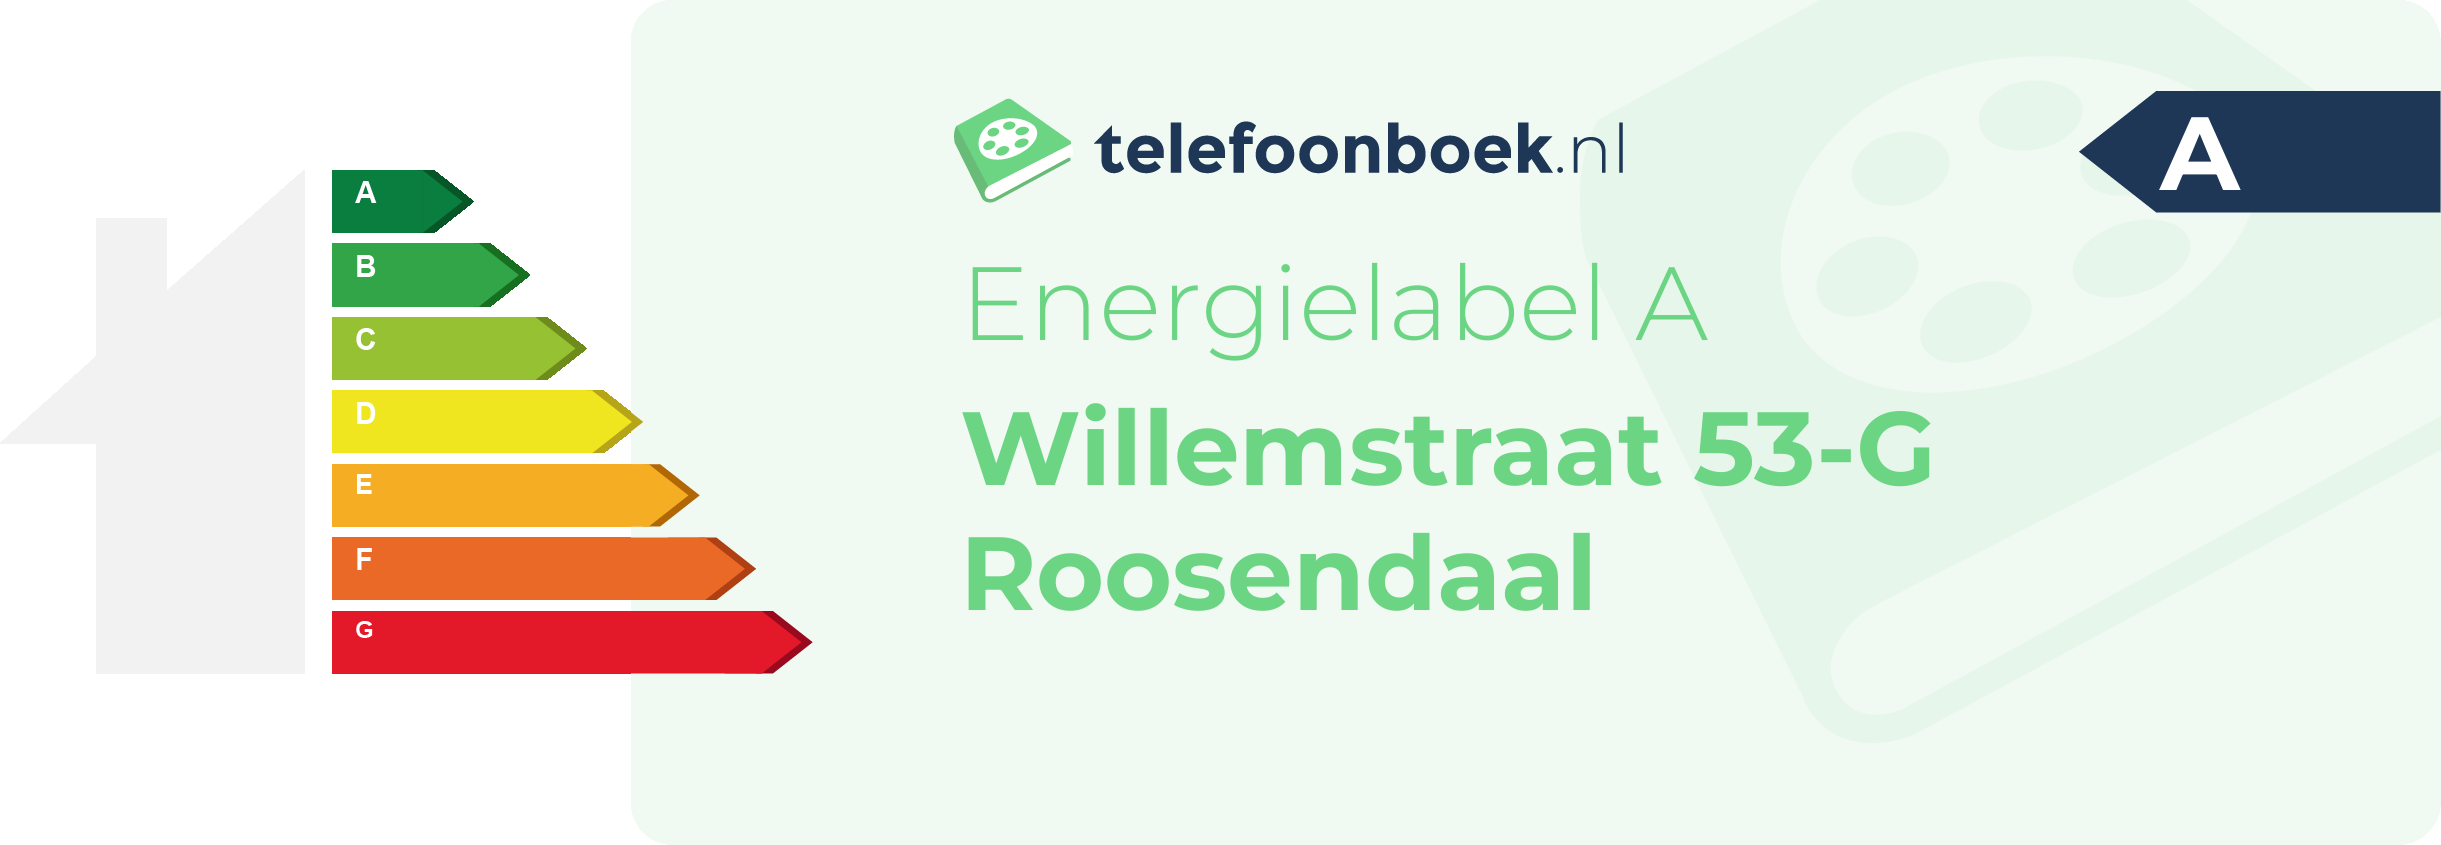 Energielabel Willemstraat 53-G Roosendaal